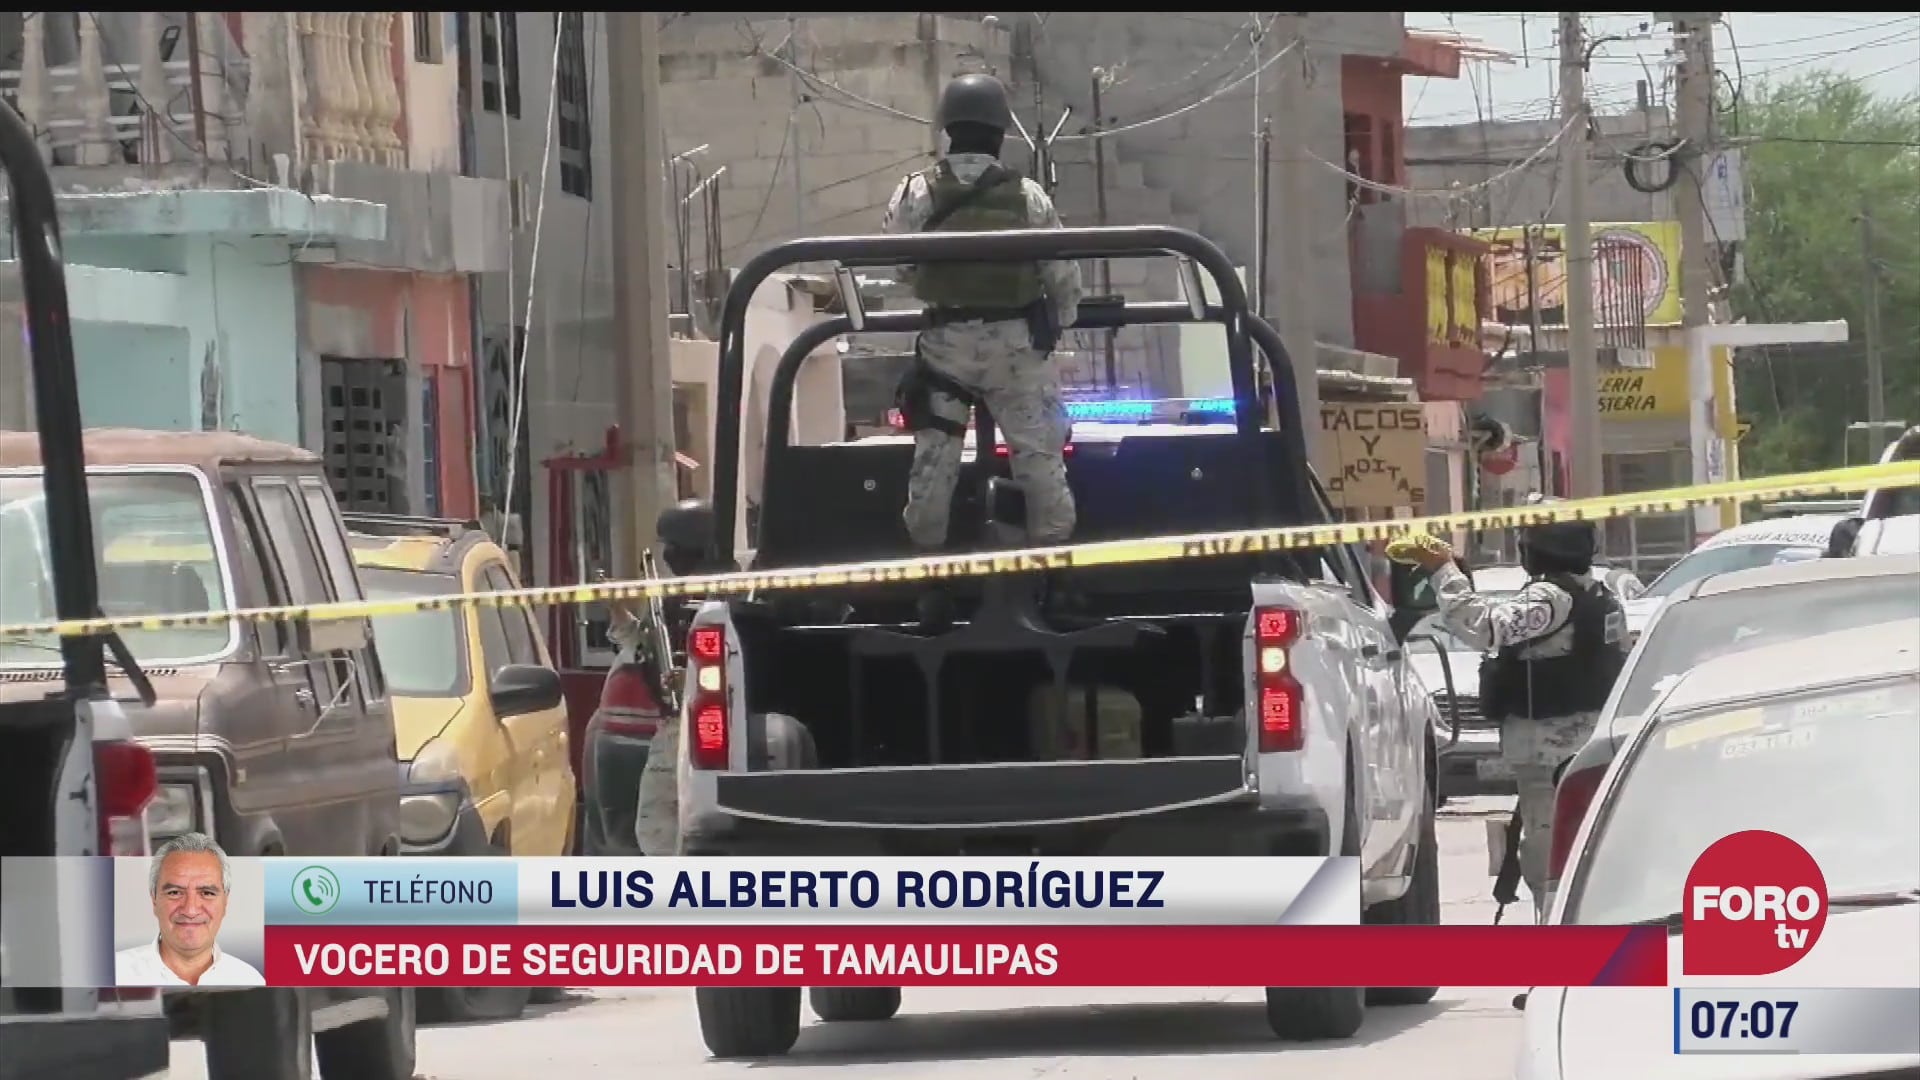 crimen organizado provoca violencia en reynosa vocero de seguridad de tamaulipas